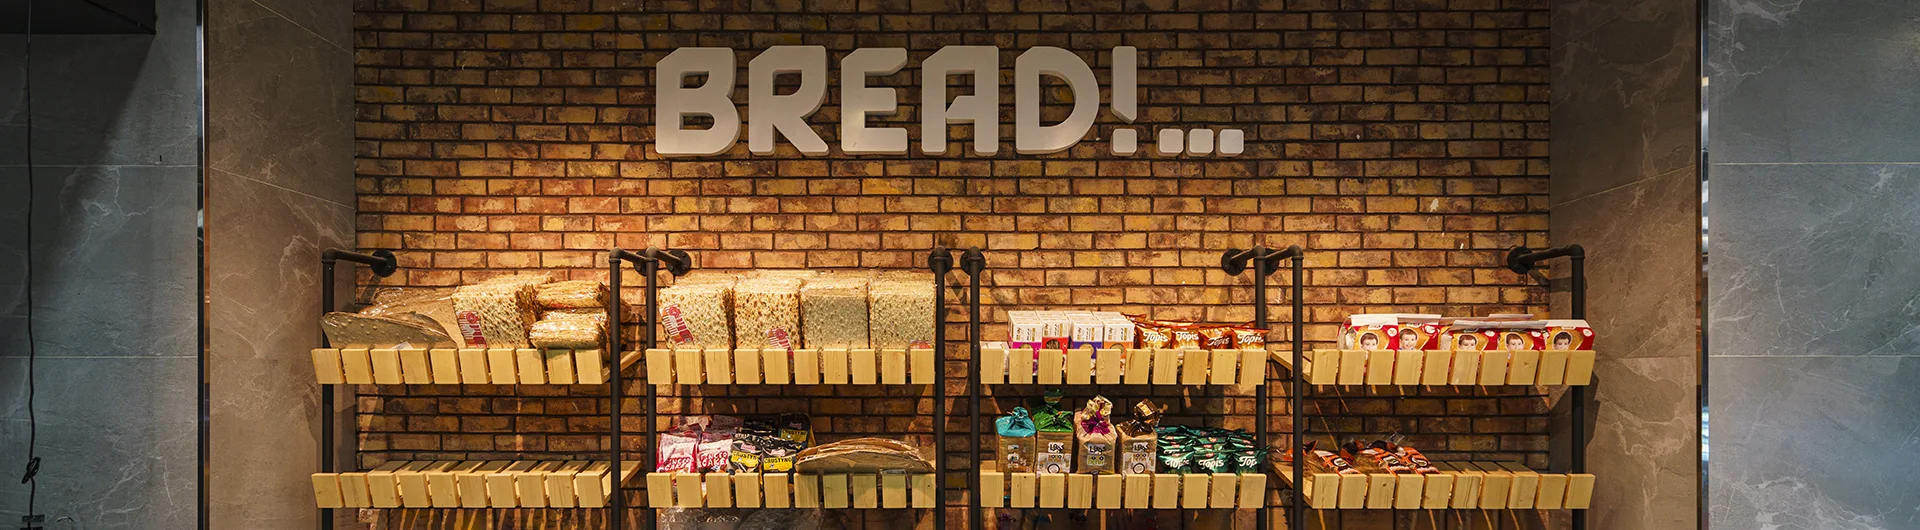 Bakery shelving BREAD & BAKERY SHELVING - bakery Display - Bakery Racks